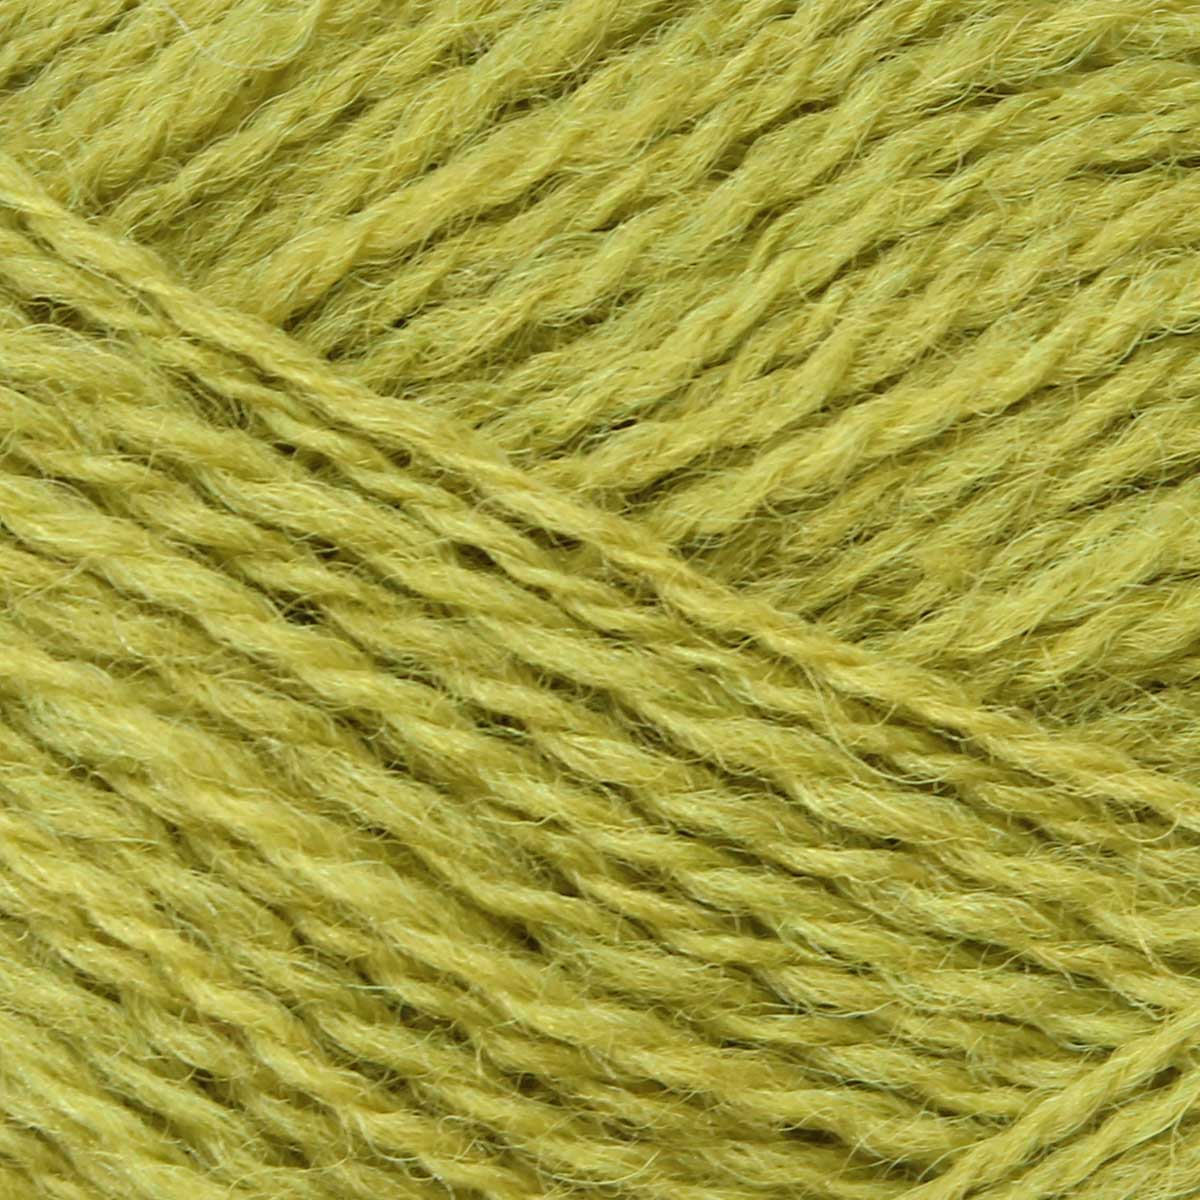 Pip Colourwork 4ply Pack Of 10: 100% British Hand Knitting Wool 25g Ball